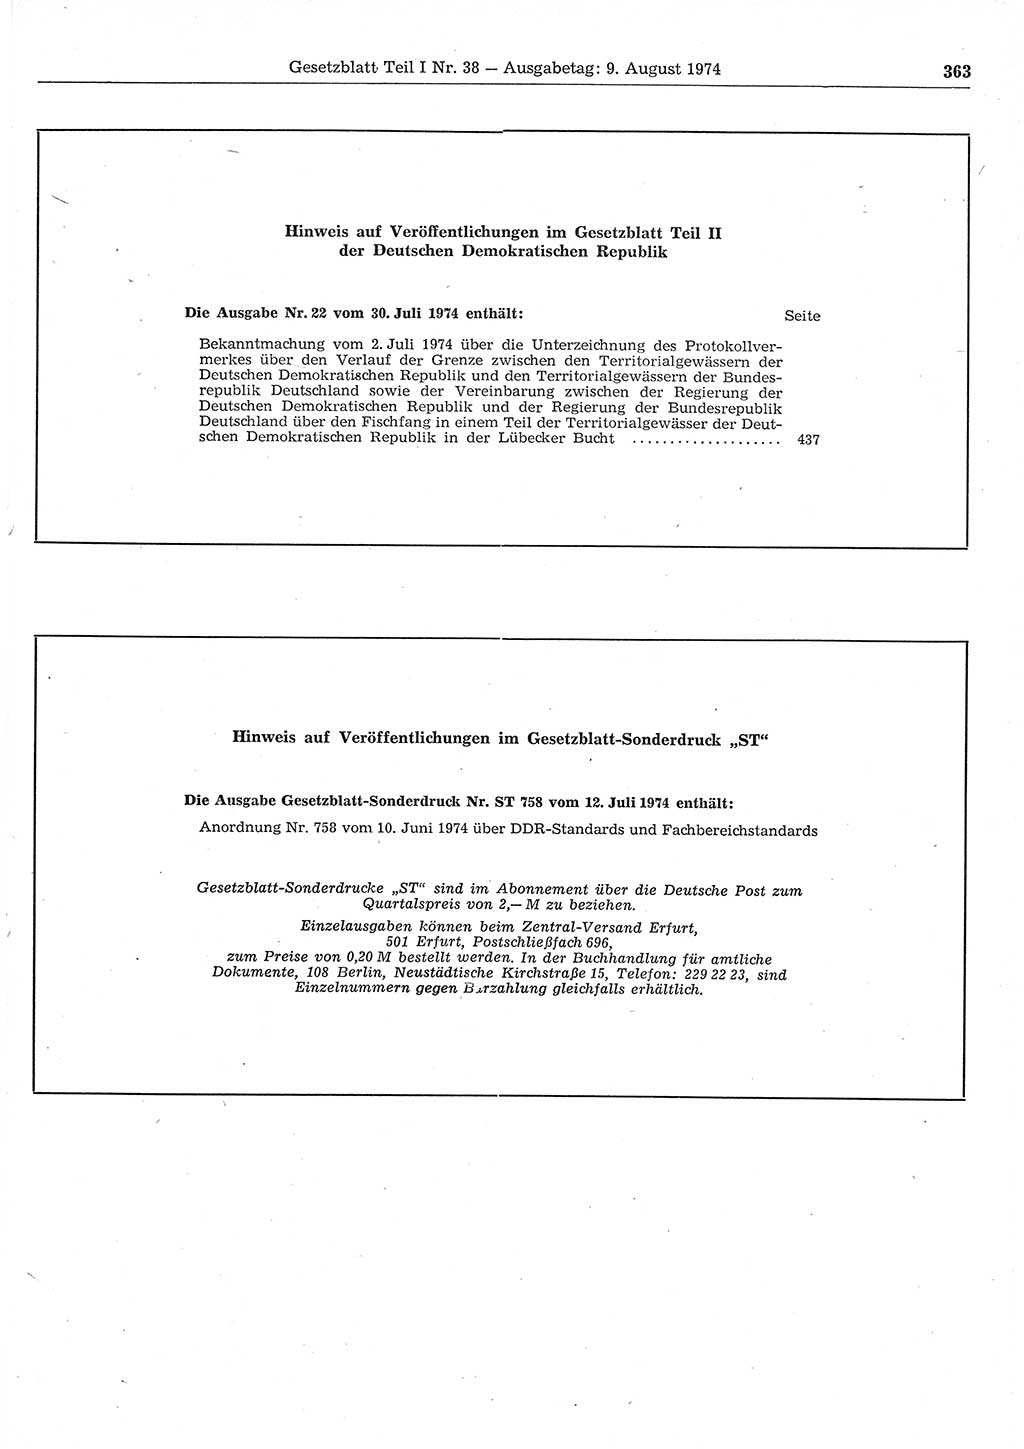 Gesetzblatt (GBl.) der Deutschen Demokratischen Republik (DDR) Teil Ⅰ 1974, Seite 363 (GBl. DDR Ⅰ 1974, S. 363)